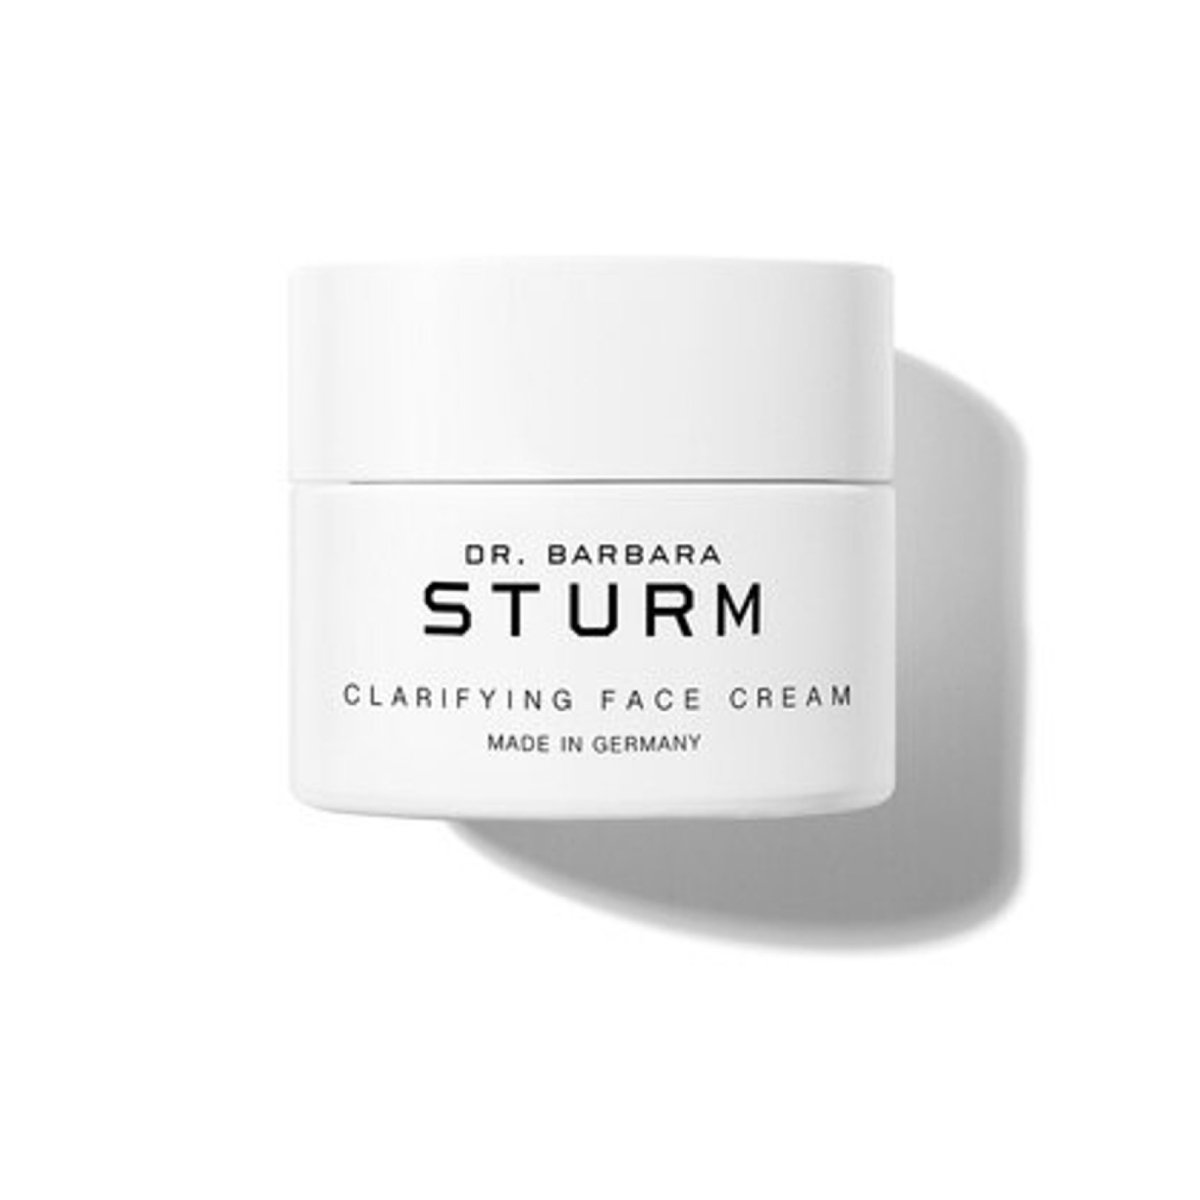 Dr. Barbara Sturm Clarifying Face Cream - SkincareEssentials